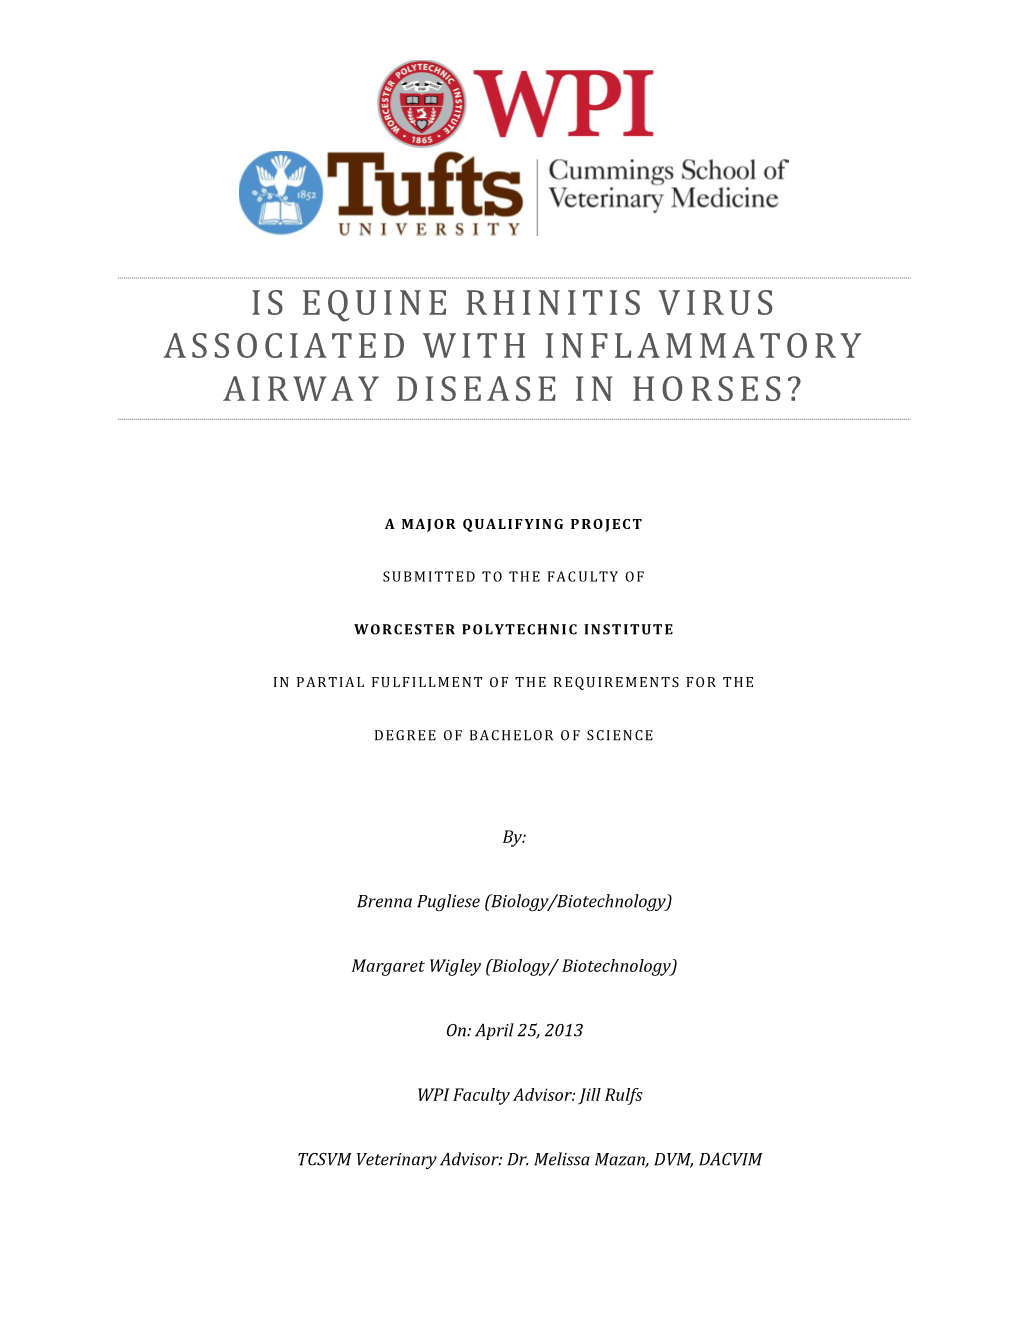 Is Equine Rhinitis Virus Associated with Inflammatory Airway Disease In